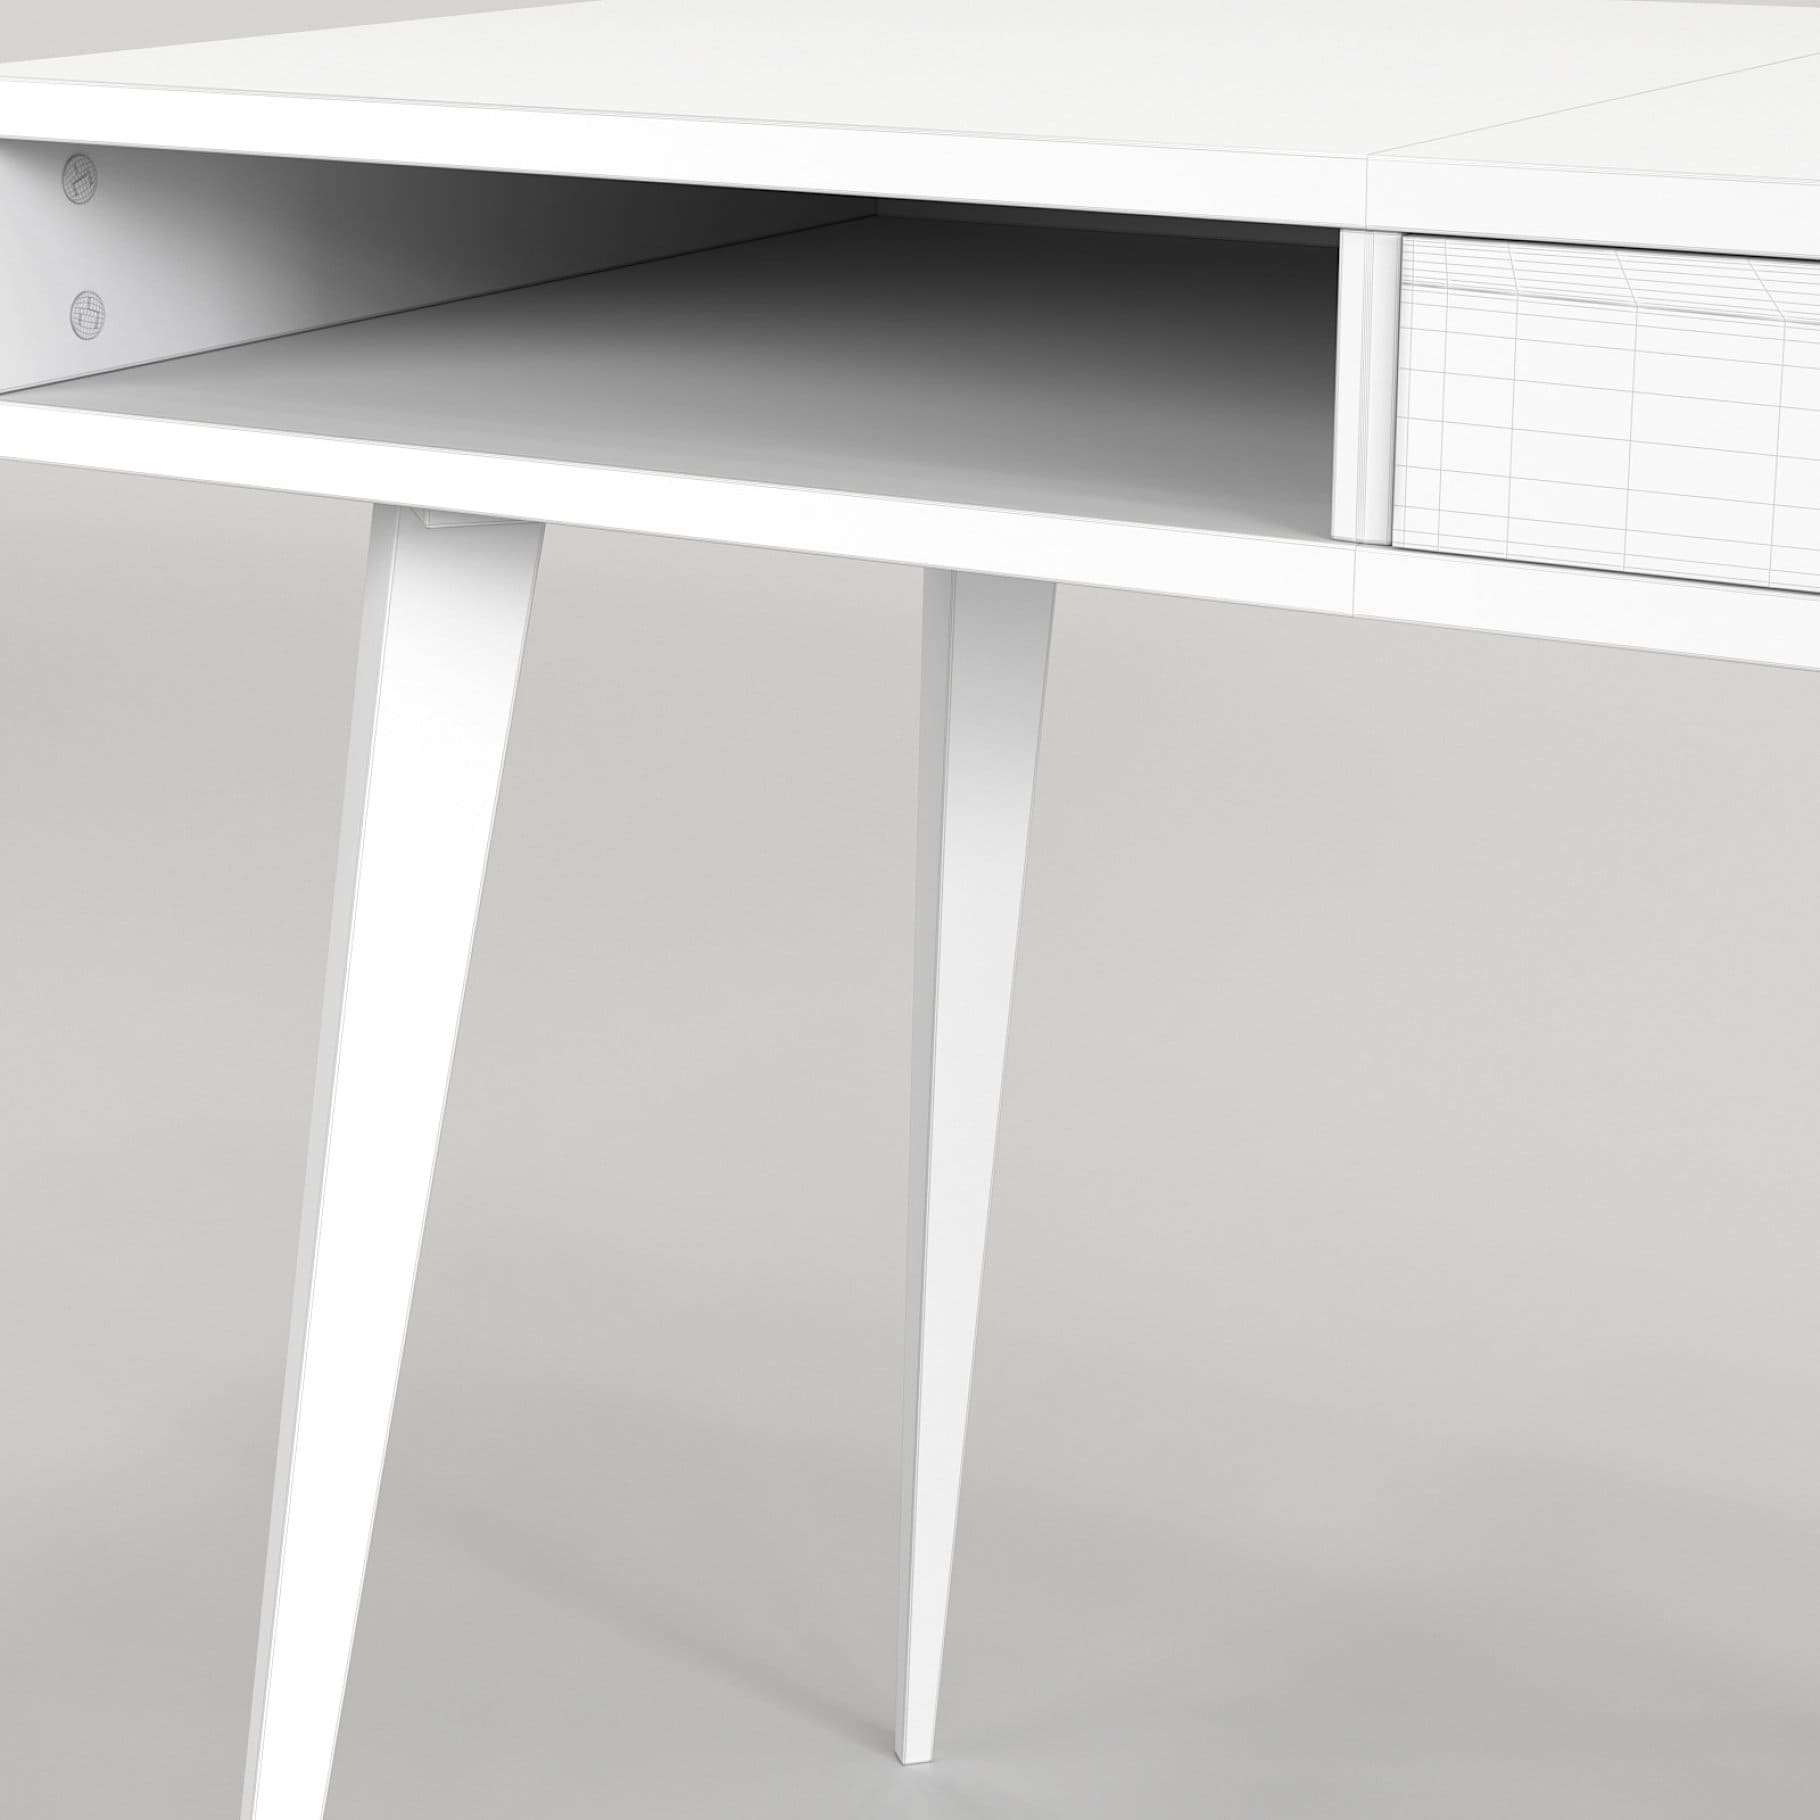 Photo of the left open shelf of the white wooden Scandinavian desk.